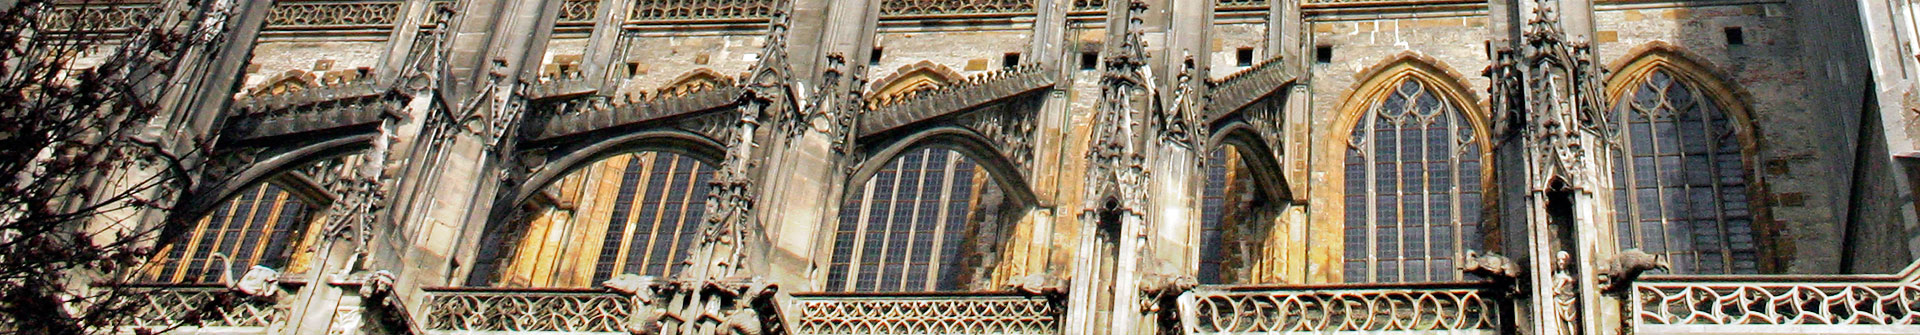 Außenwand des Ulmer Münsters mit hohen Fenstern und kunstvollen Türmchen